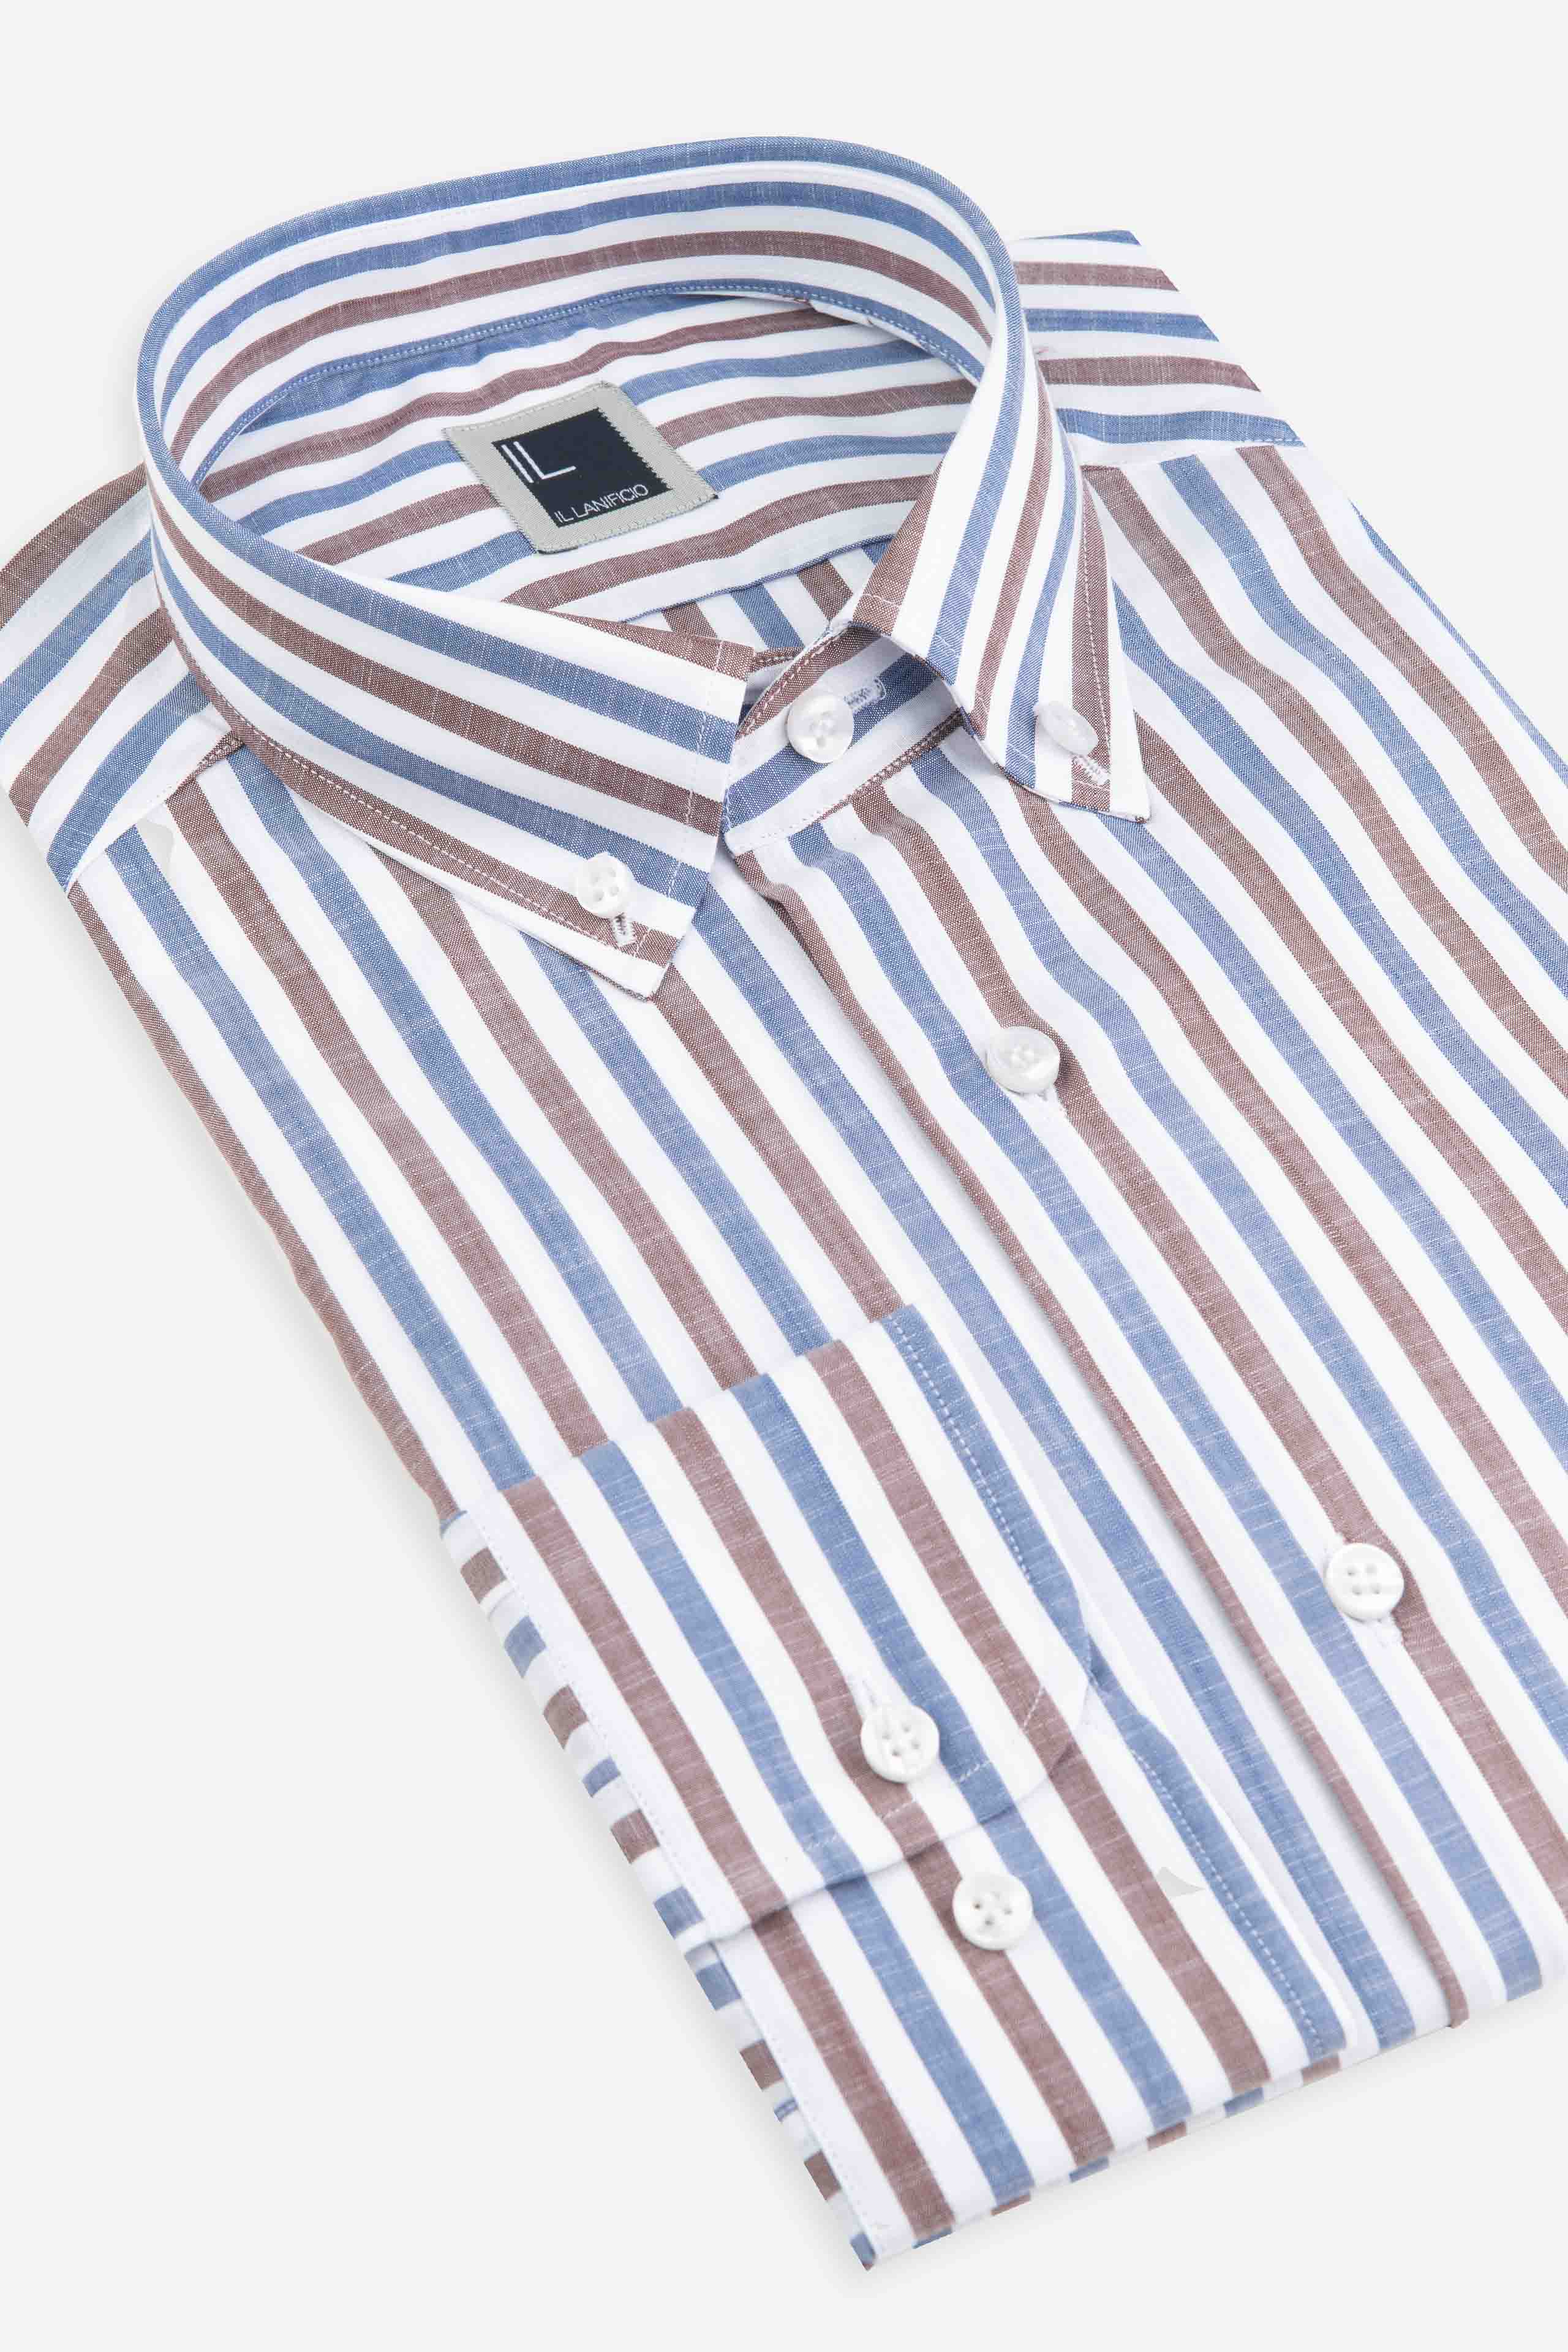 Striped button down shirt - Blue-Brown stripe